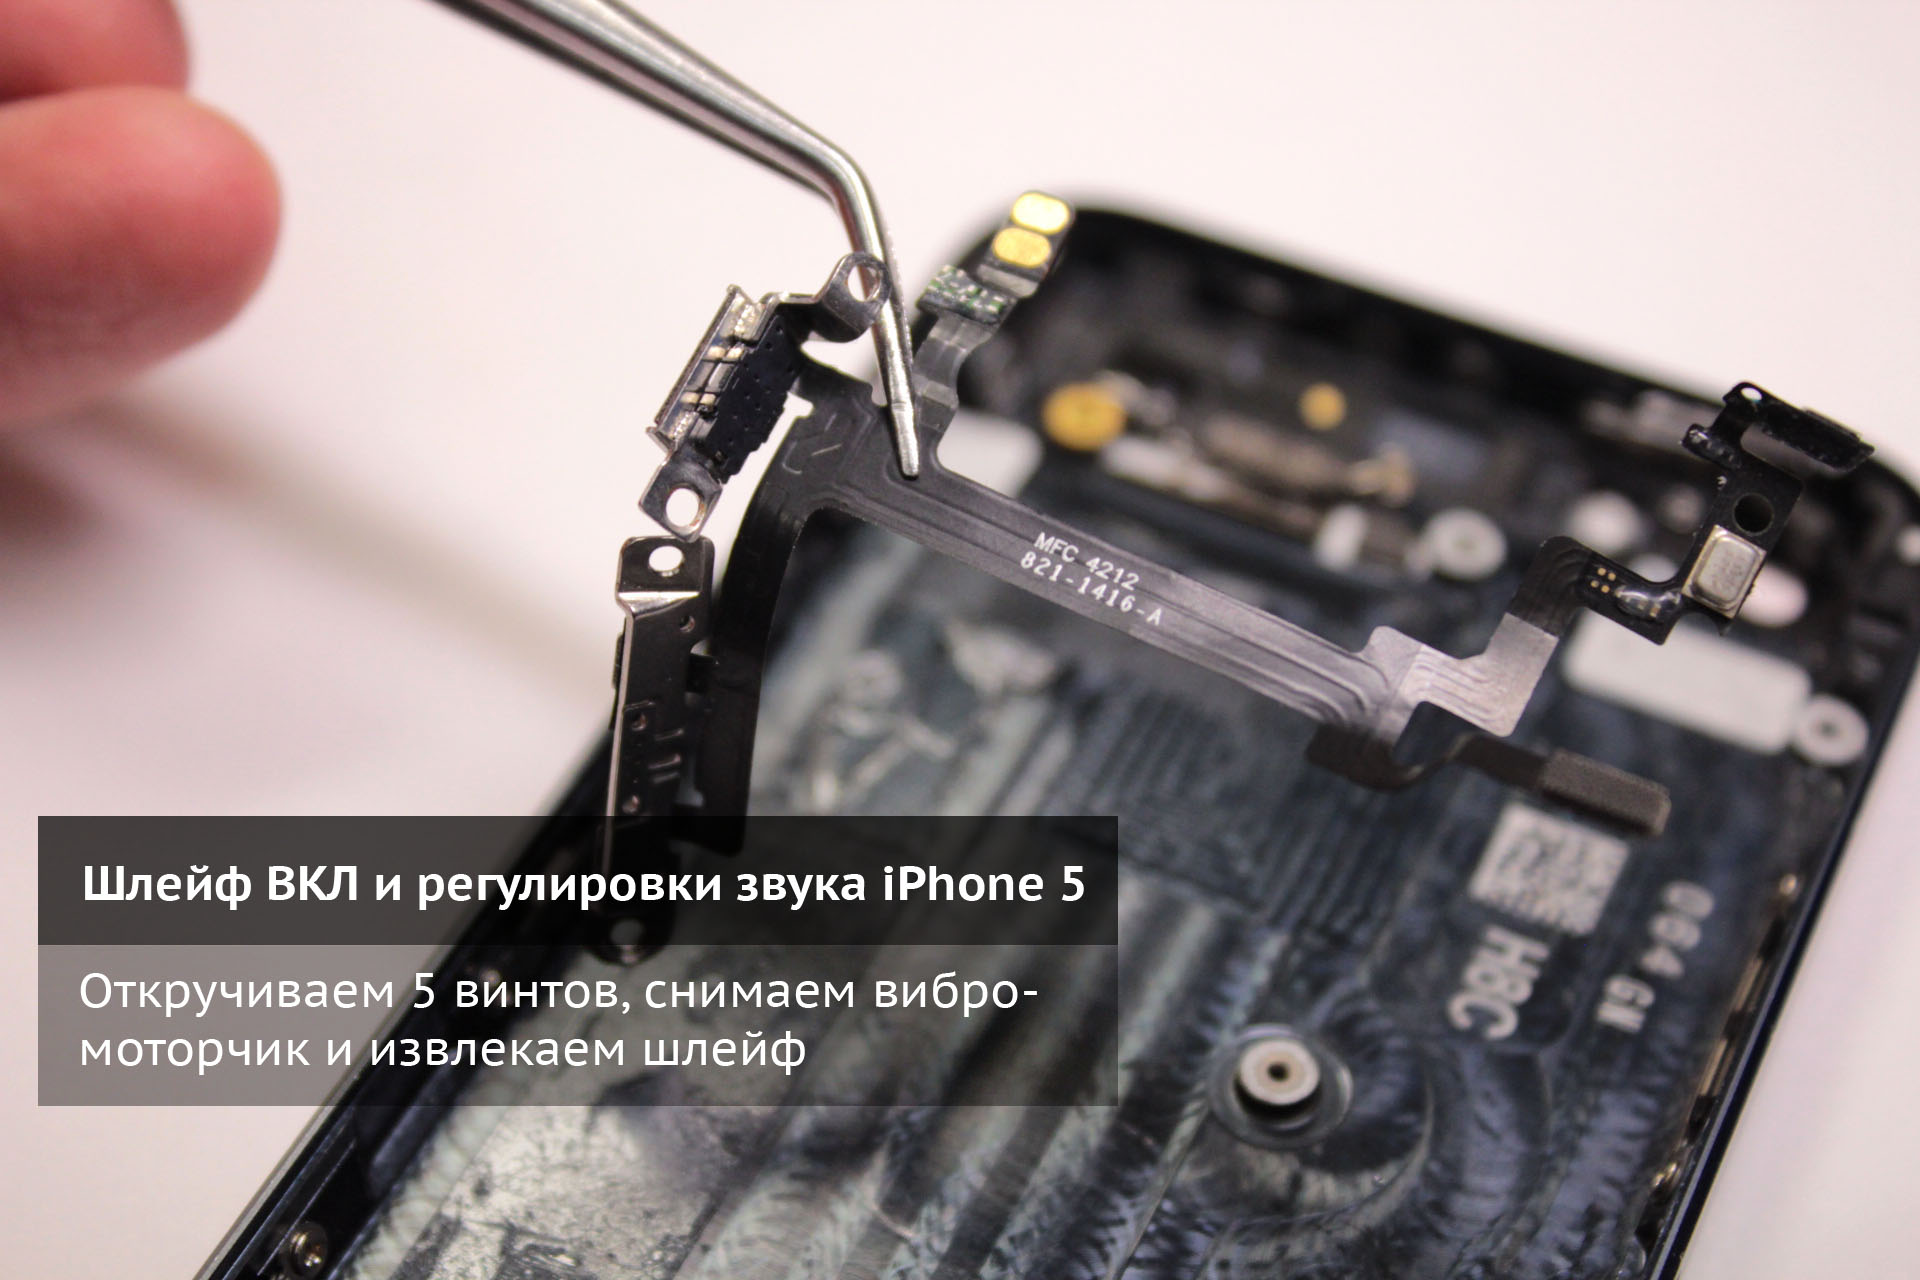 Откручиваем винты и достаем шлейф регулировки звука и кнопки включения iPhone 5